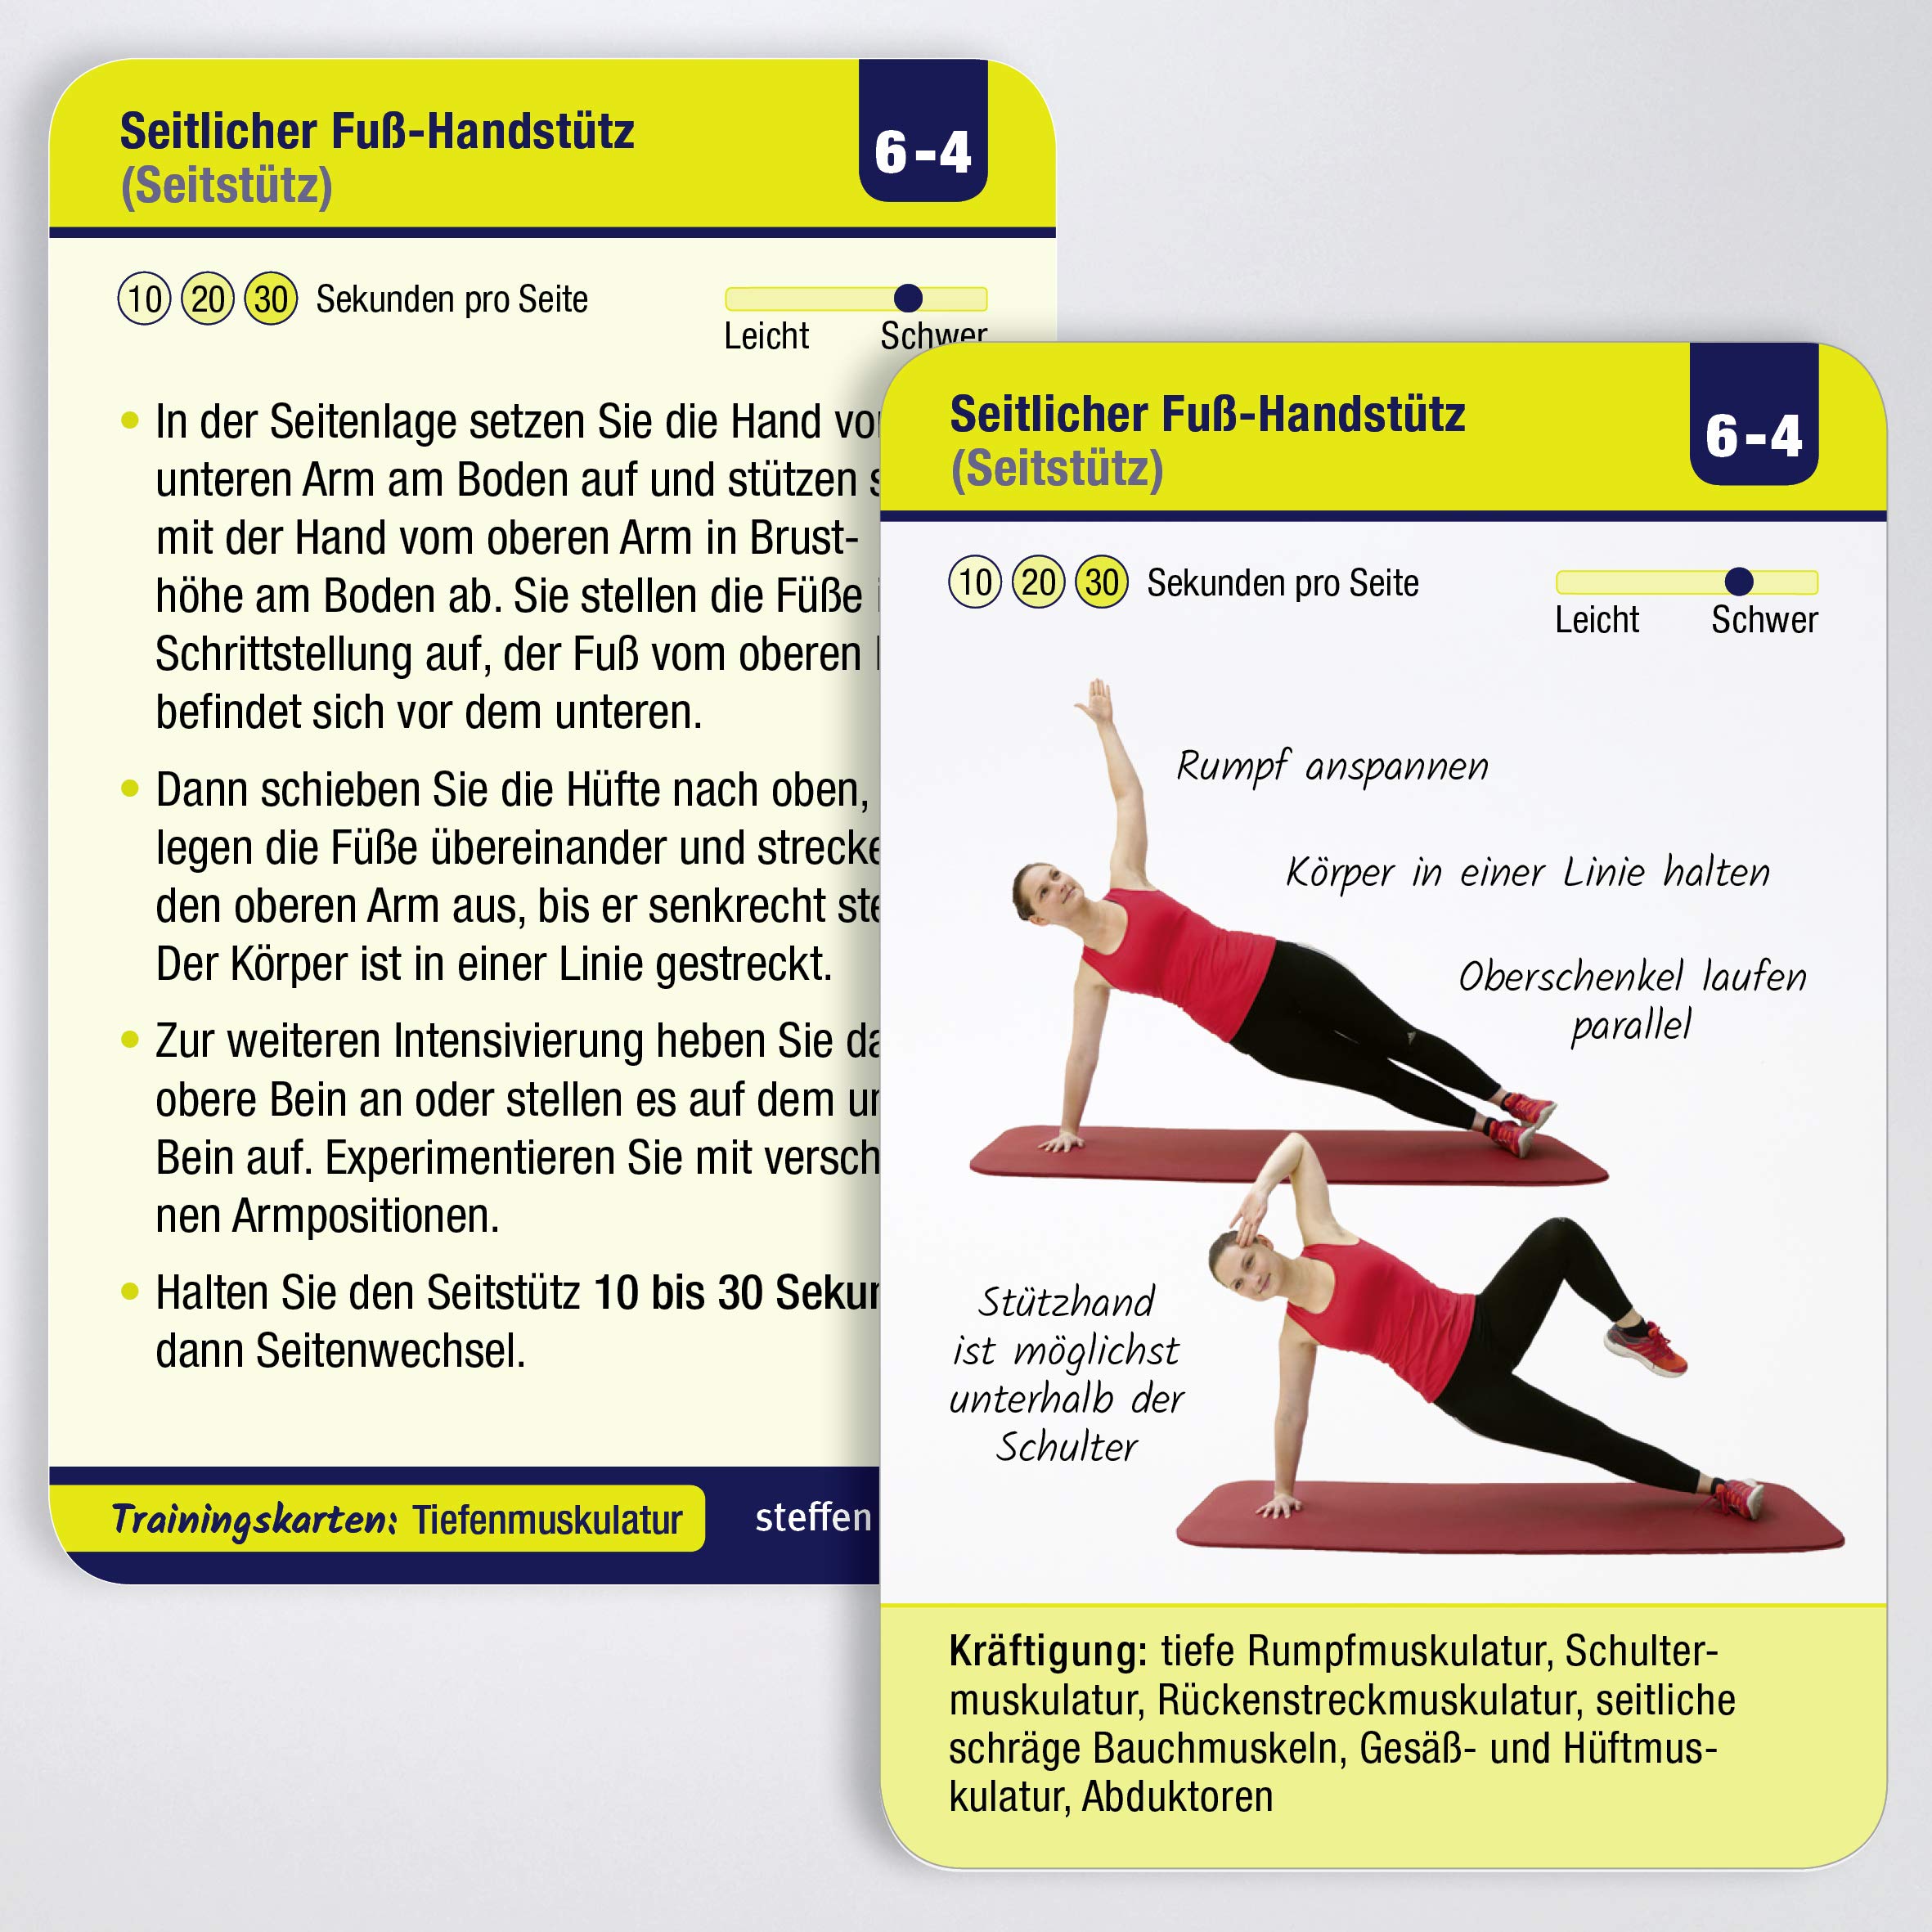 Tiefenmuskulatur: 55 Trainingskarten für Kraft, Stabilität & Balance (Trainingsreihe von Ronald Thomschke)